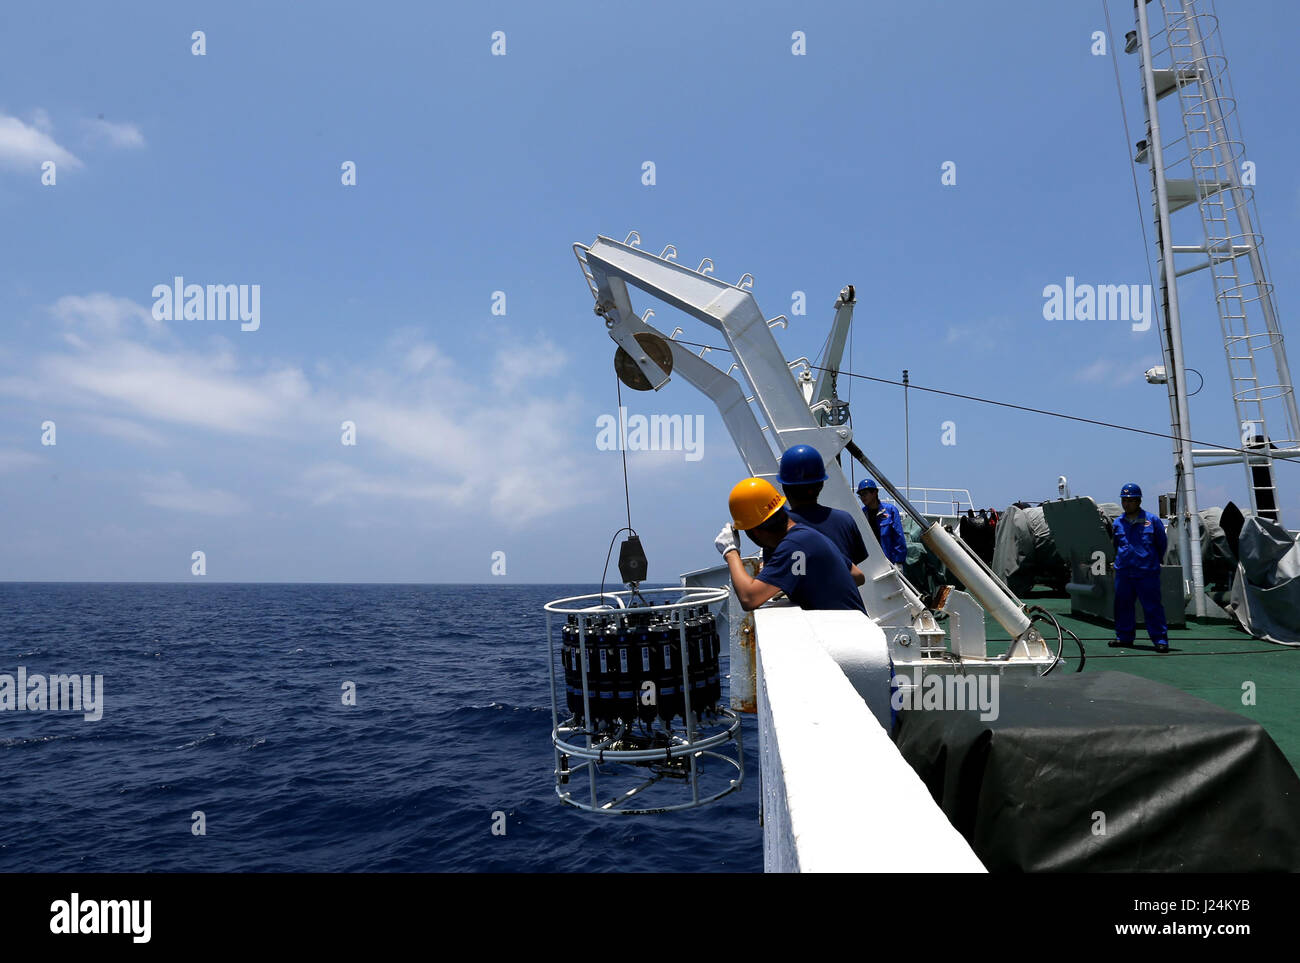 (170425) -- À BORD D'UN NAVIRE XIANGYANGHONG 09, 25 avril, 2017 (Xinhua) -- Les scientifiques examinent la température et salinité de l'eau de mer avec l'appareil à bord d'un navire Xiangyanghong 09 CTD dans la mer de Chine du Sud, sud de la Chine, le 25 avril 2017. Les scientifiques chinois ont entrepris une mission d'eau profonde en mer de Chine du Sud mardi, le début de la deuxième étape de la 38e expédition océanique. Le submersible habité Jiaolong avec son équipe de scientifiques sont arrivés à l'emplacement à bord du navire-mère Xiangyanghong 09. Le submersible devrait effectuer sa première plongée en mer de Chine du Sud le mercredi cette année Banque D'Images